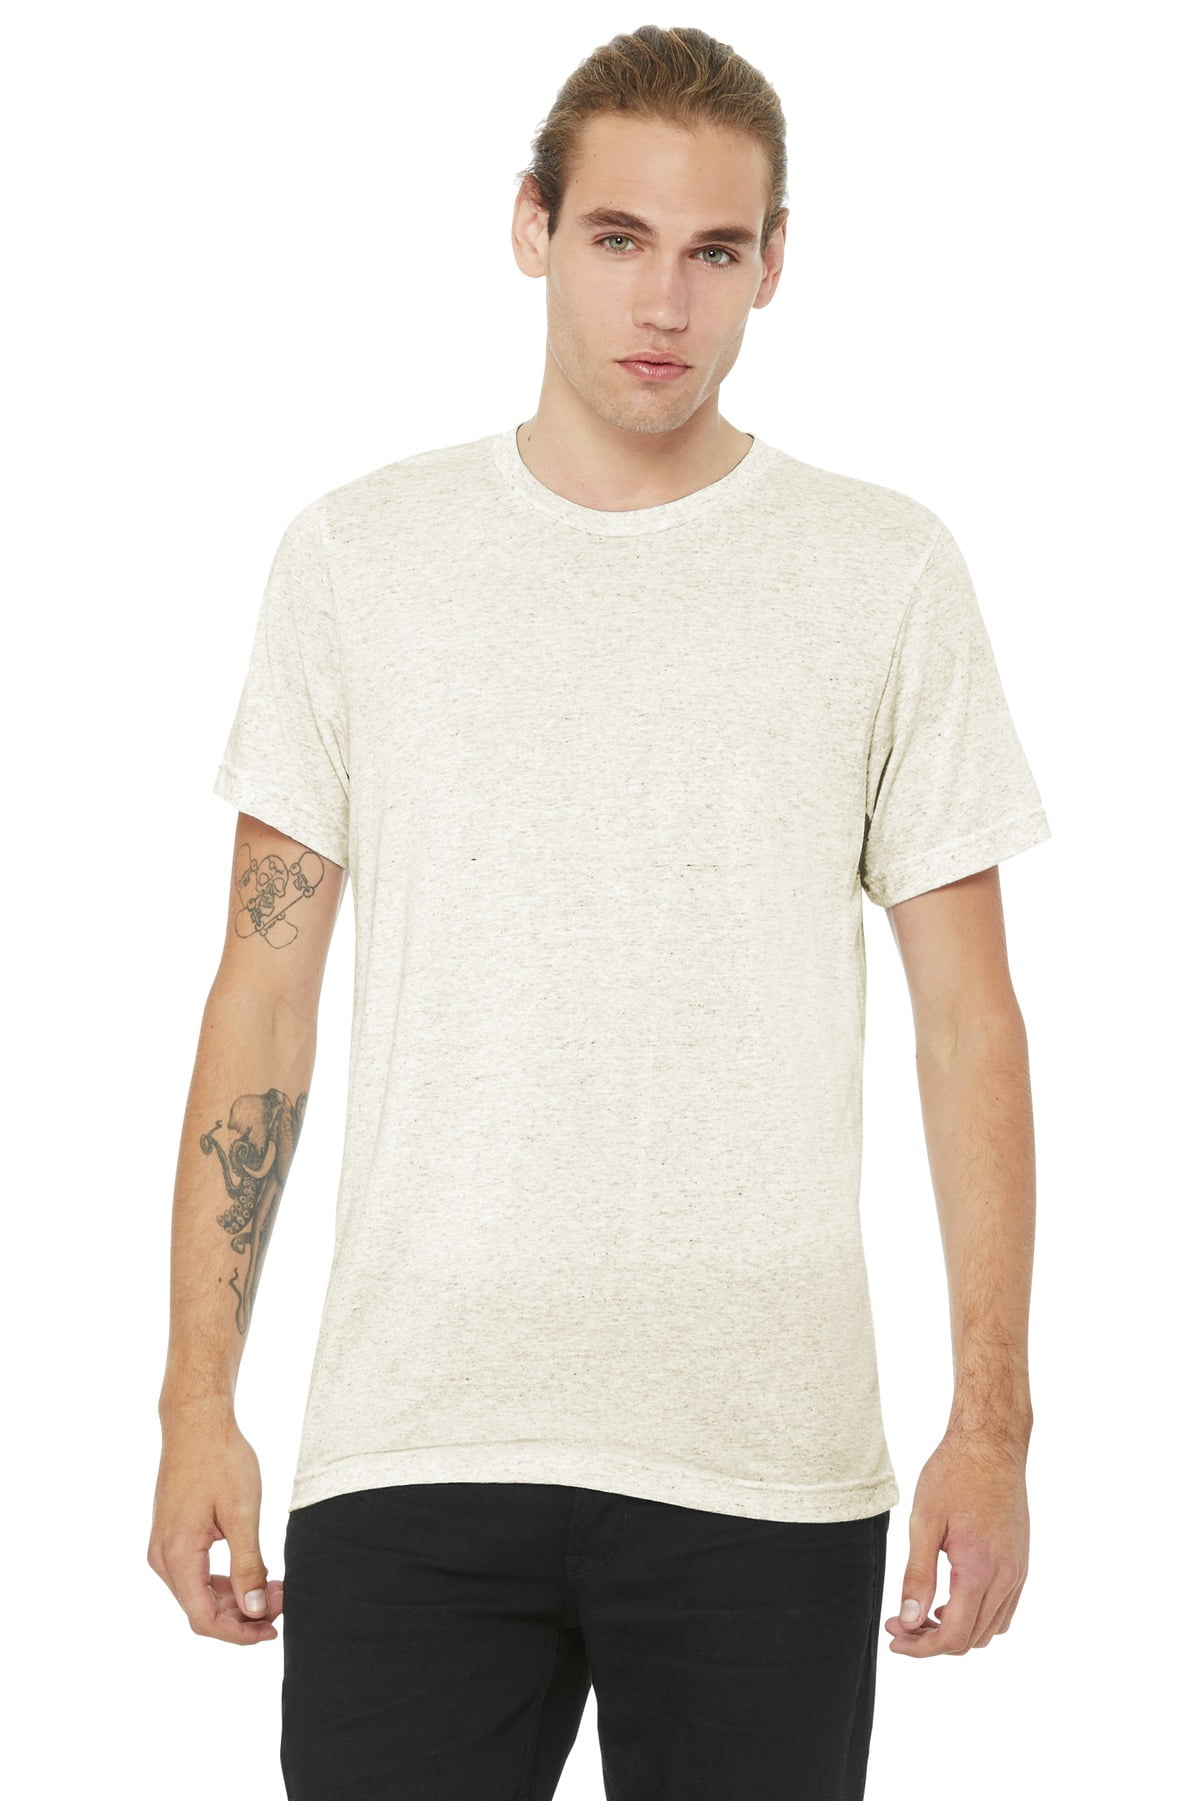 Unisex Triblend T-Shirt - TRIBLEND OATMEAL 2XL 